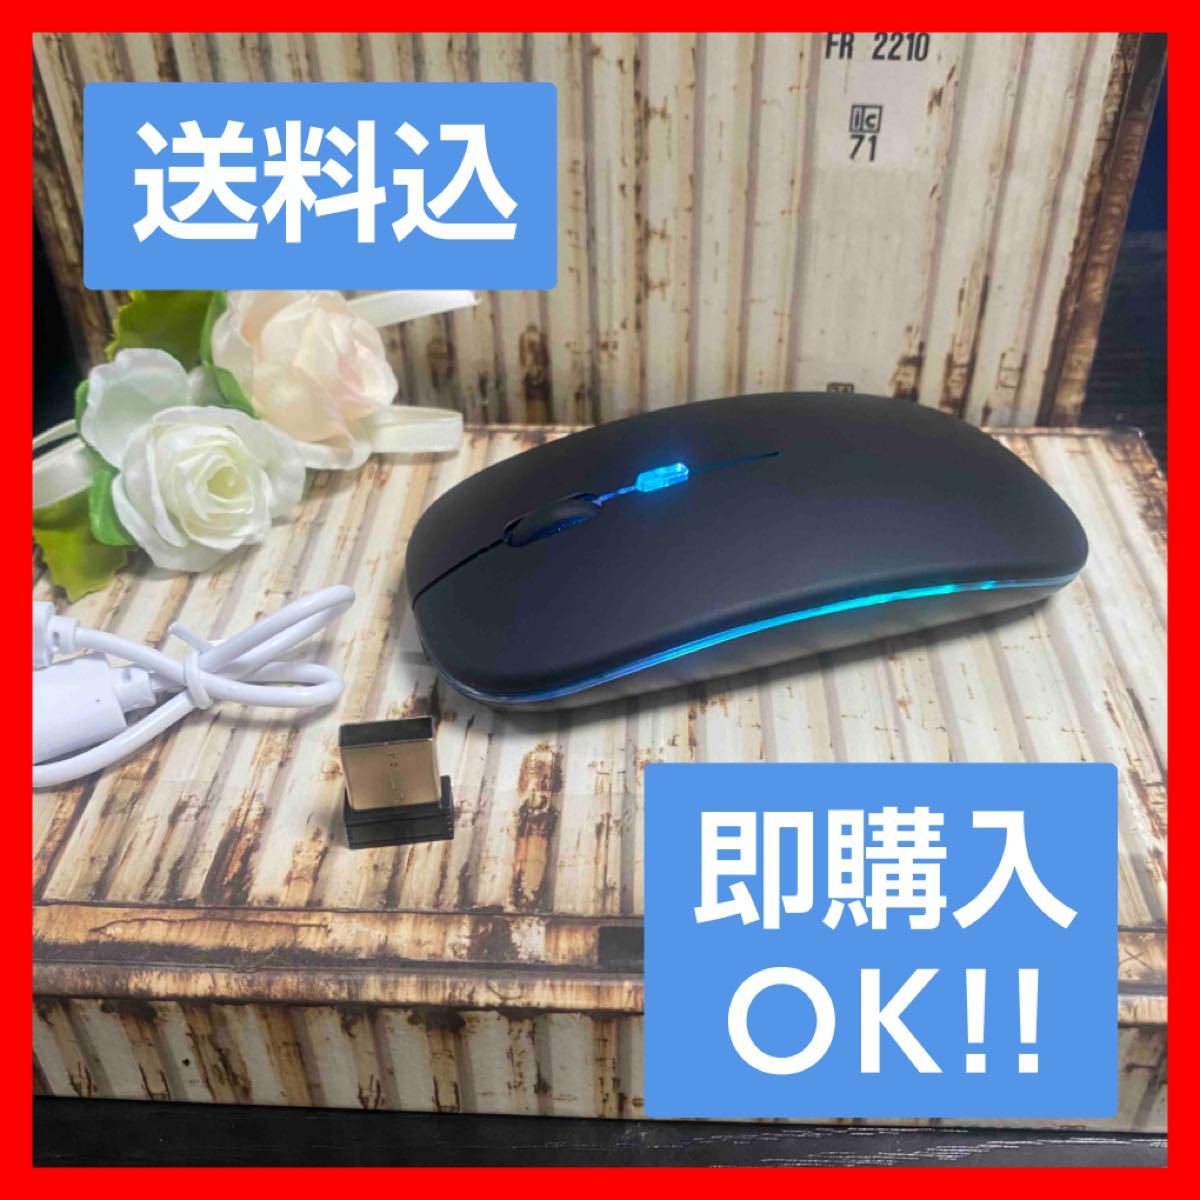 ブラック【7色LEDランプ】ワイヤレスマウス 充電式 静音無線マウス 高精度